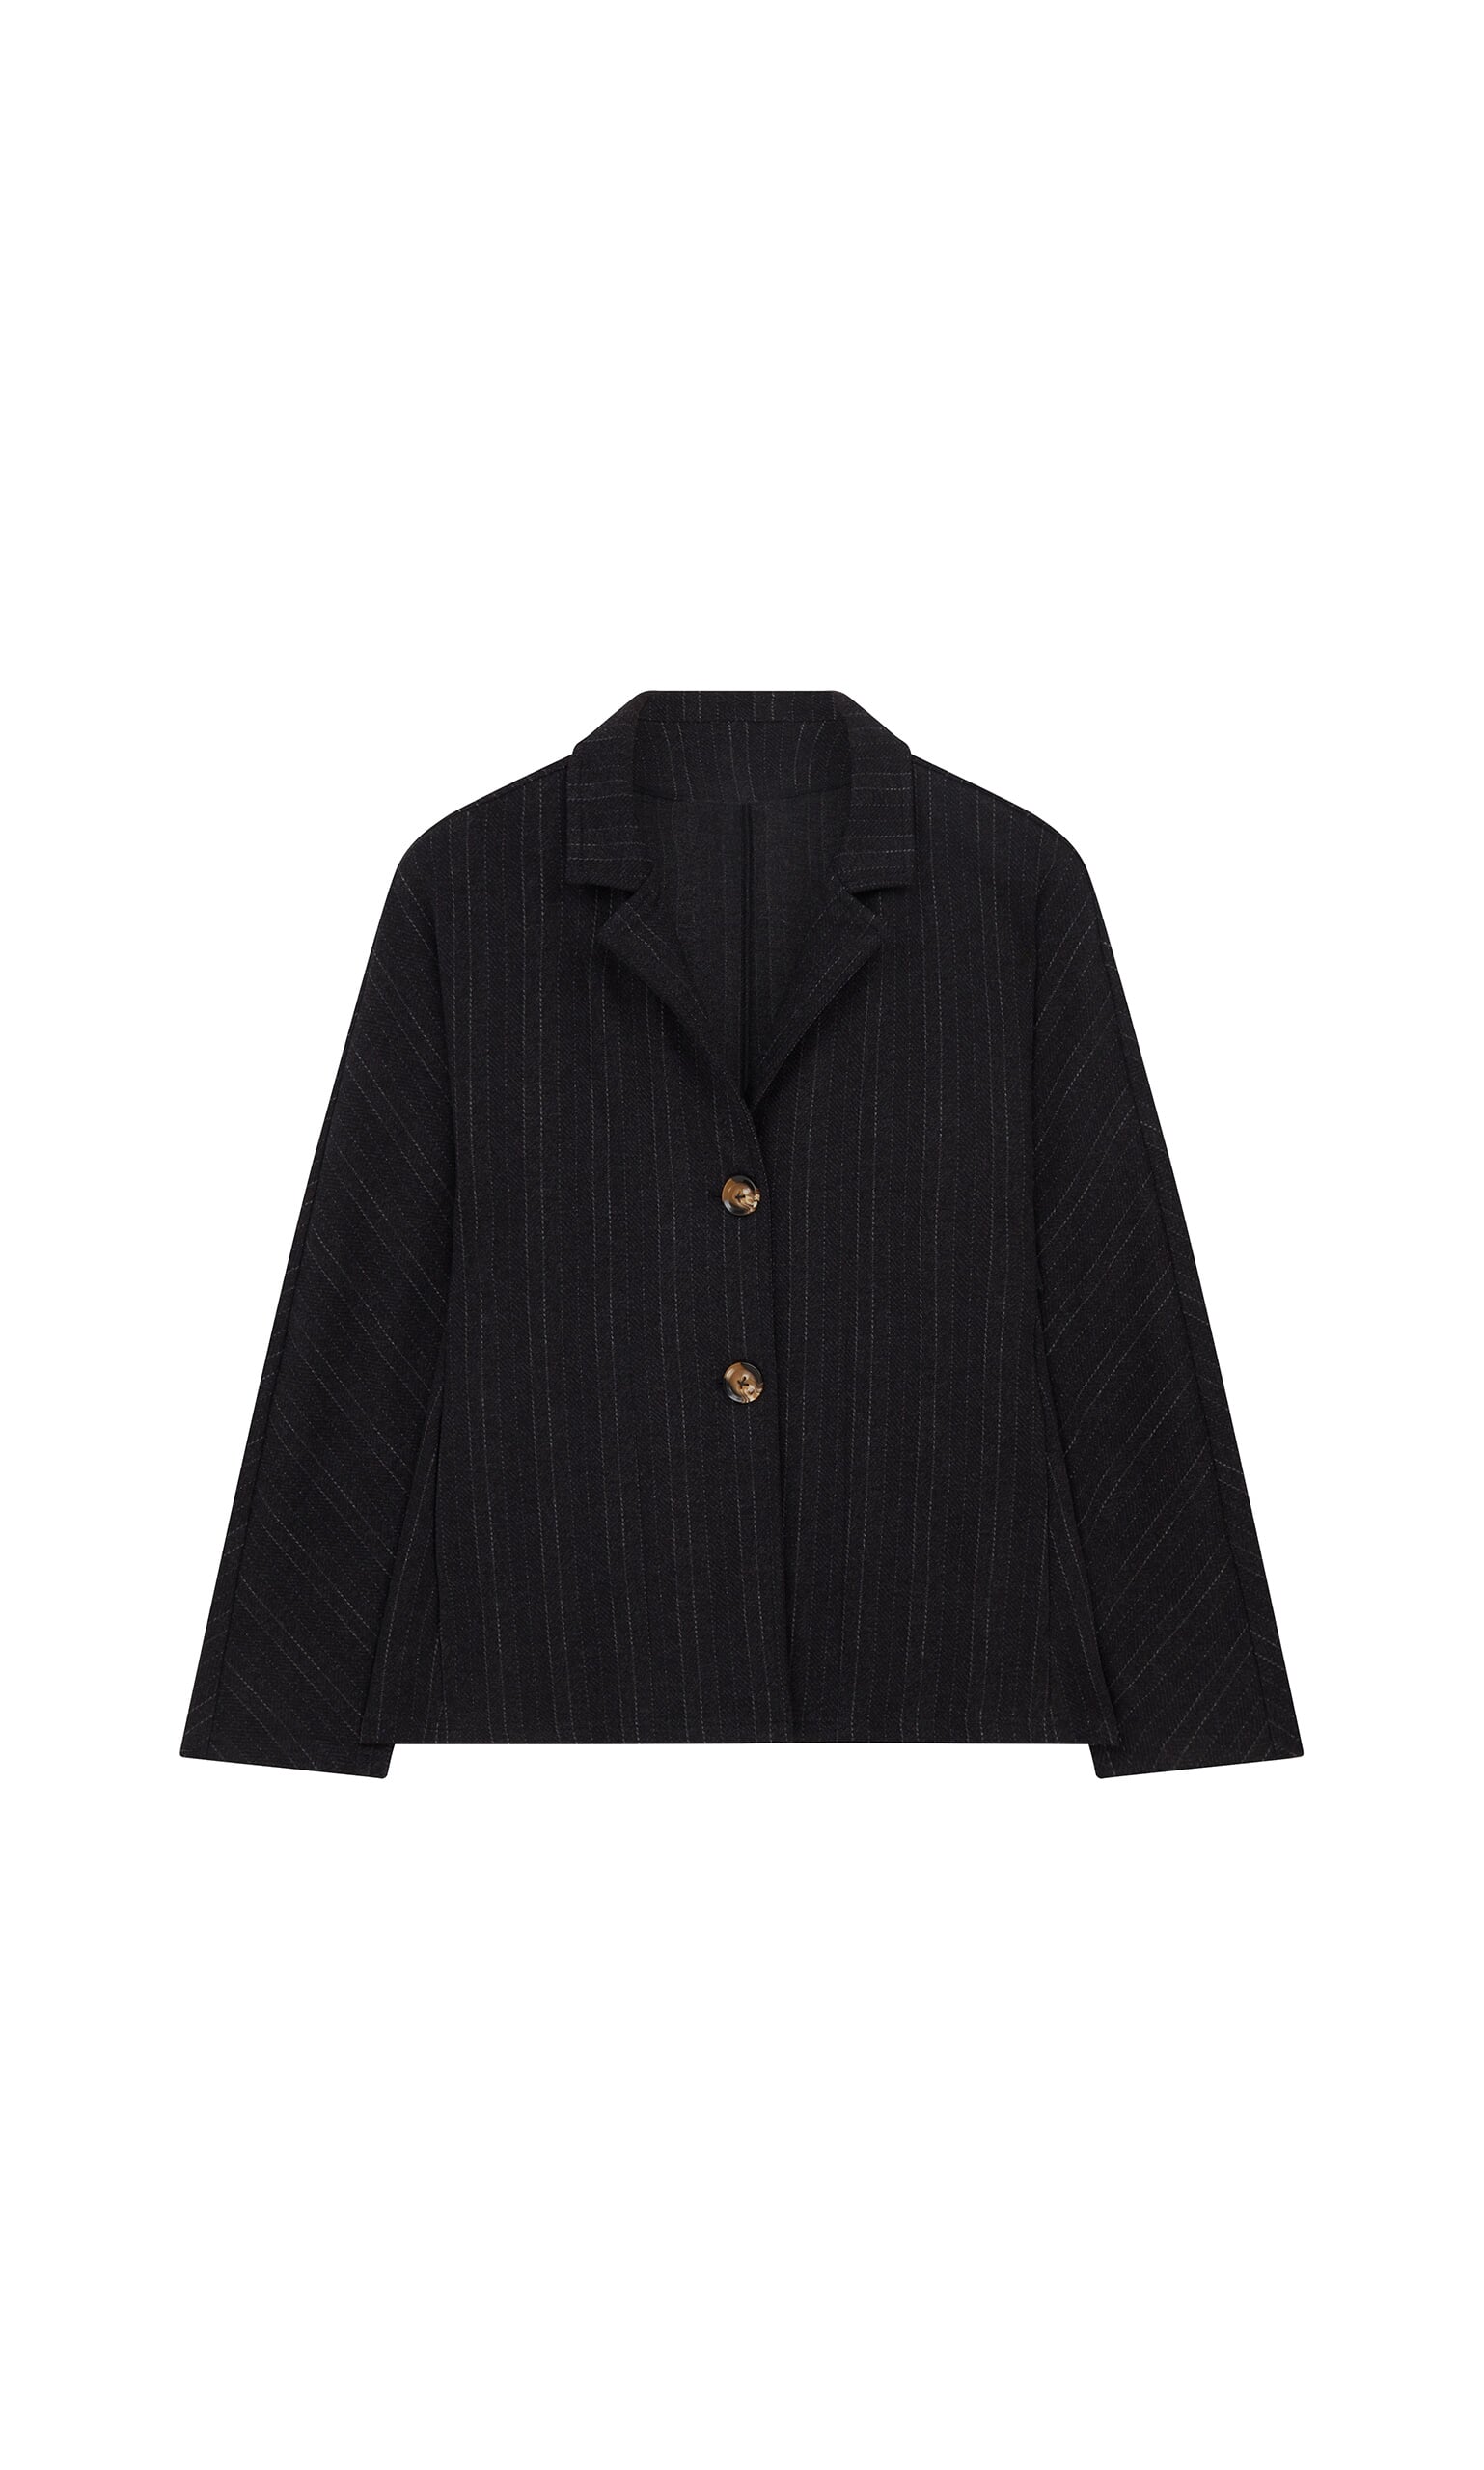 Grey pinstripe jacket - Plümo Ltd